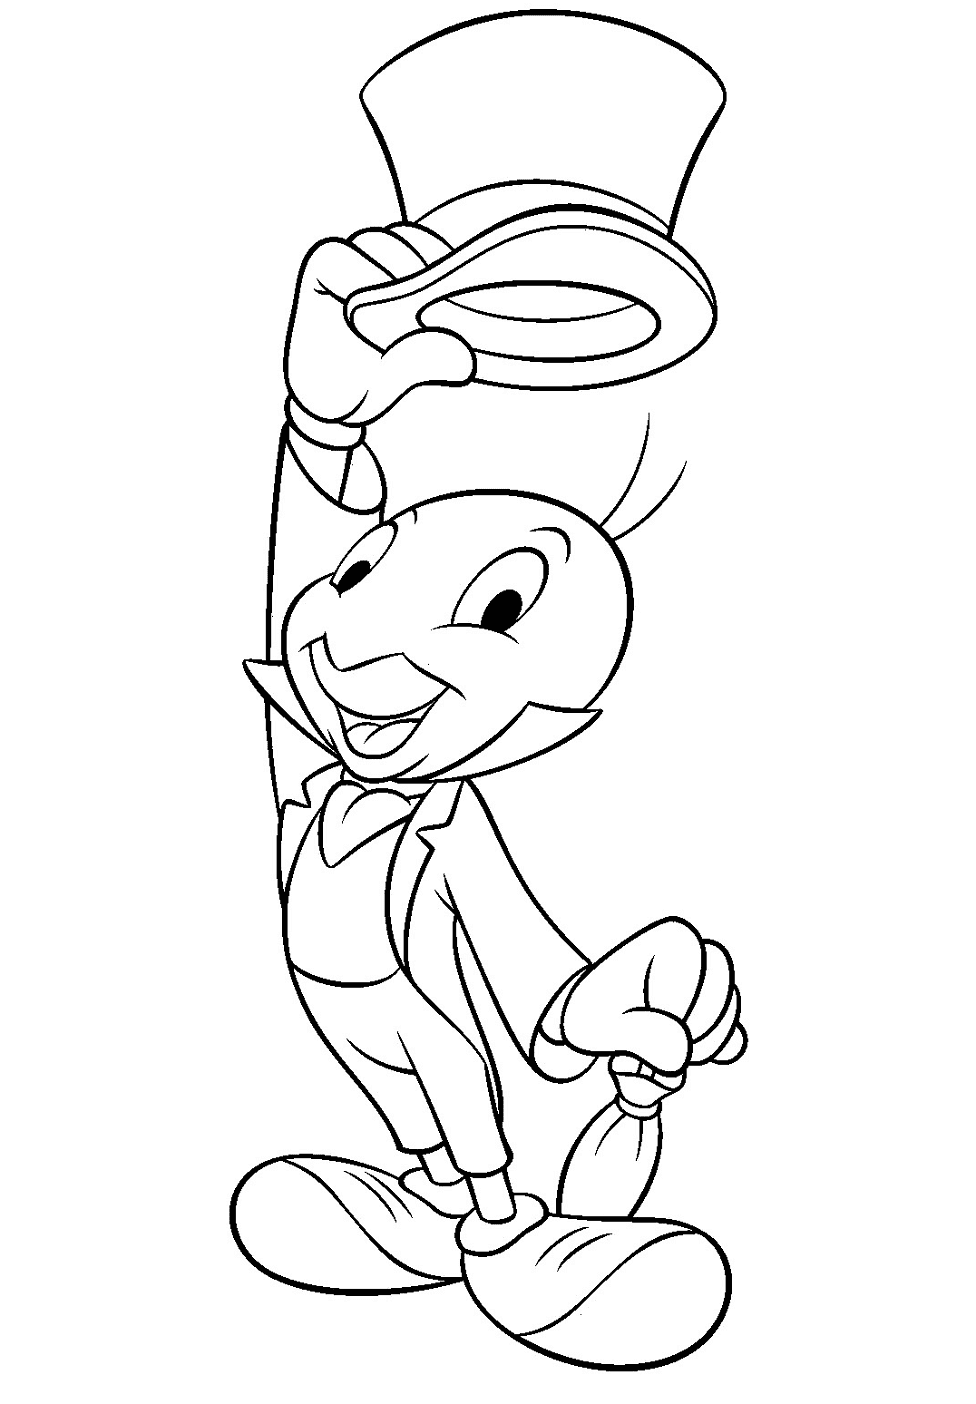 Jiminy Cricket de Pinocho Página para colorear